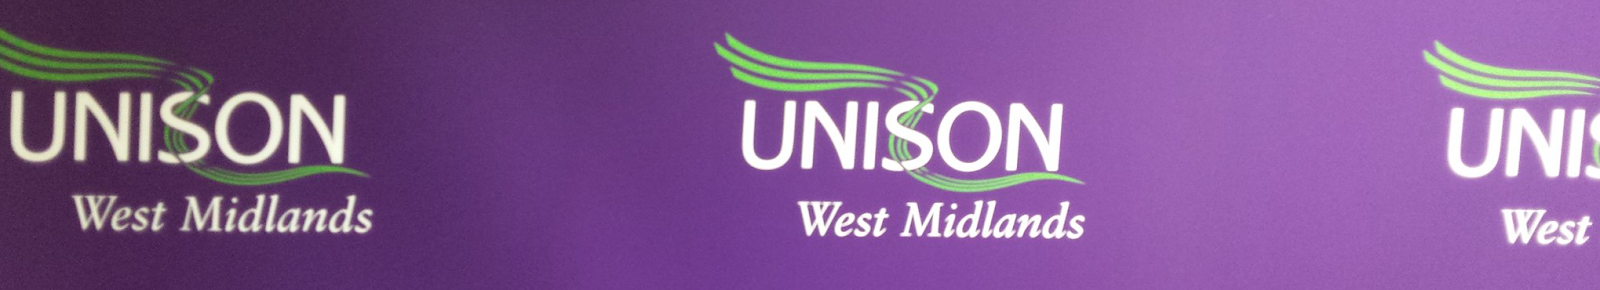 UNISON West Midlands